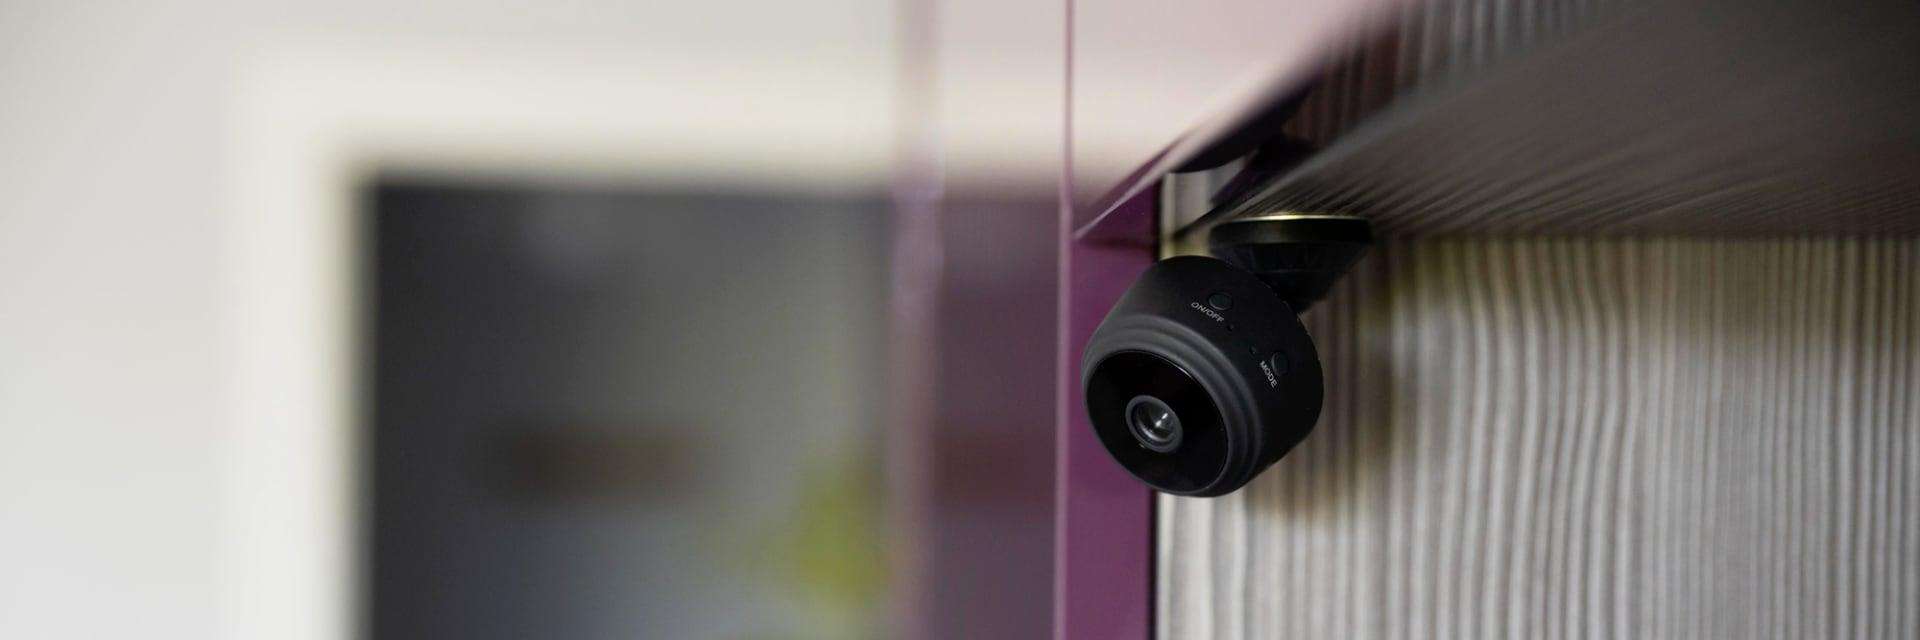 ¿Cómo detectar cámaras ocultas en un motel?